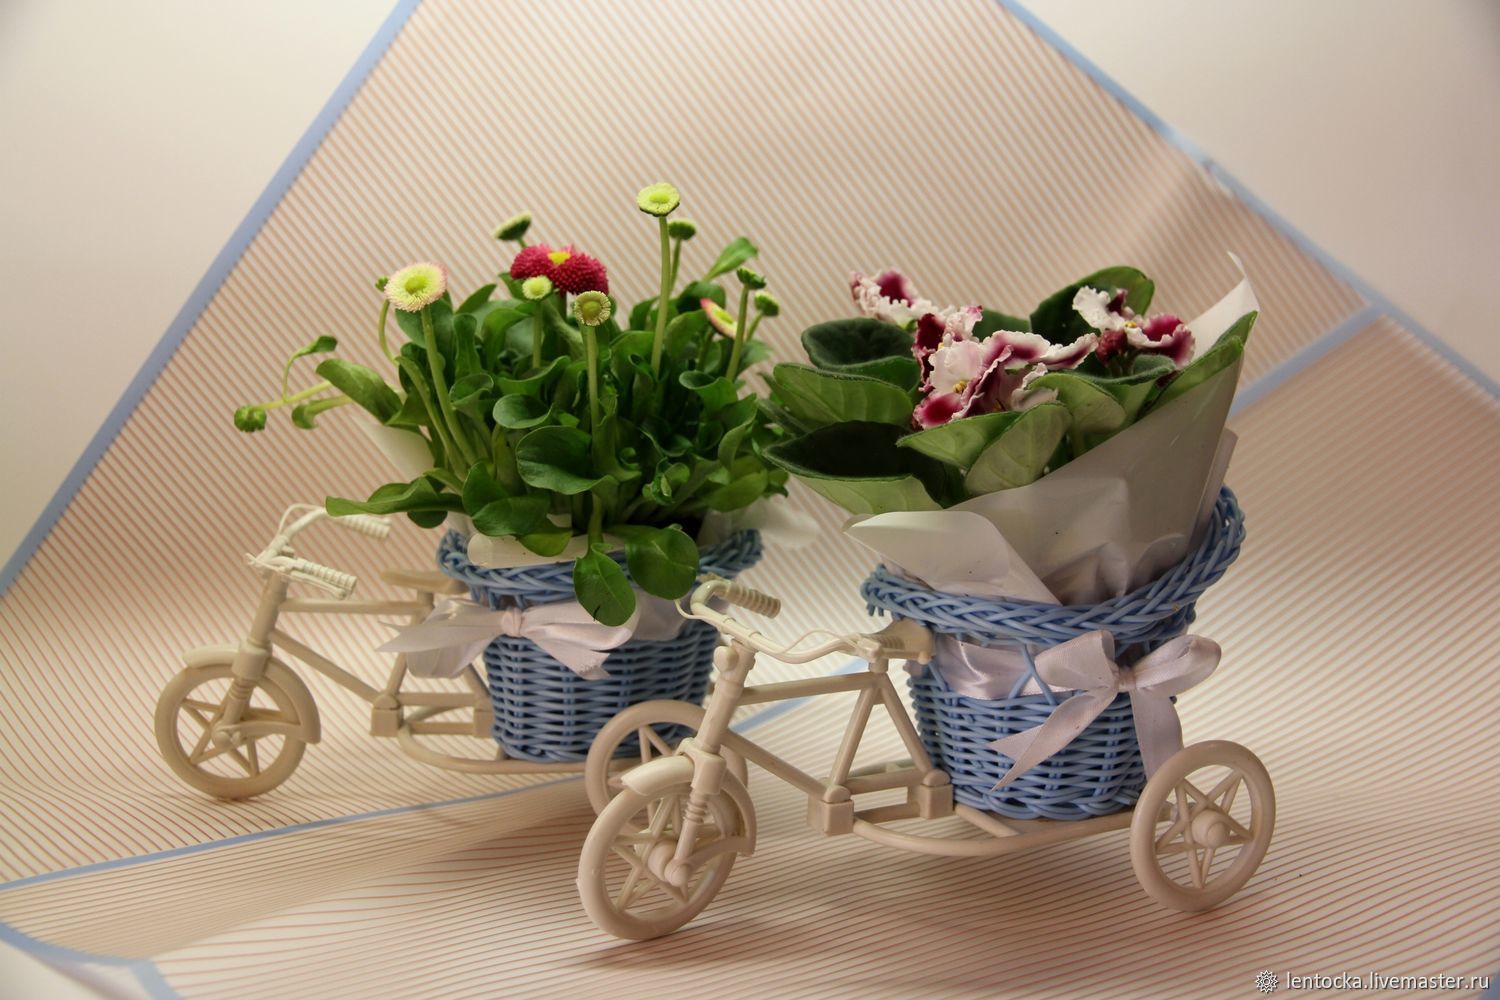 Поделка велосипед с цветами